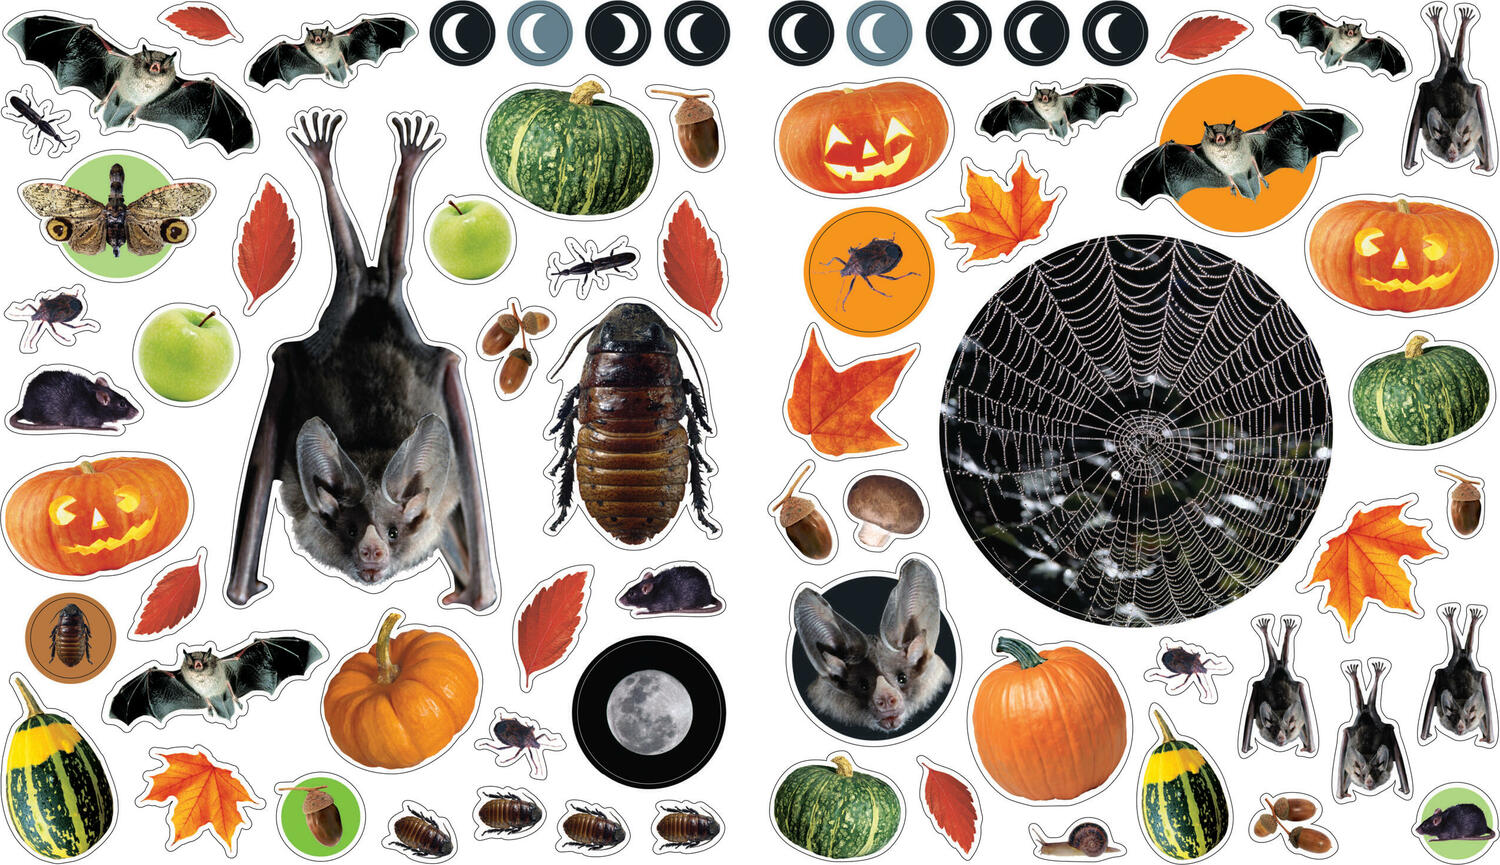 Eyelike Stickers: Halloween